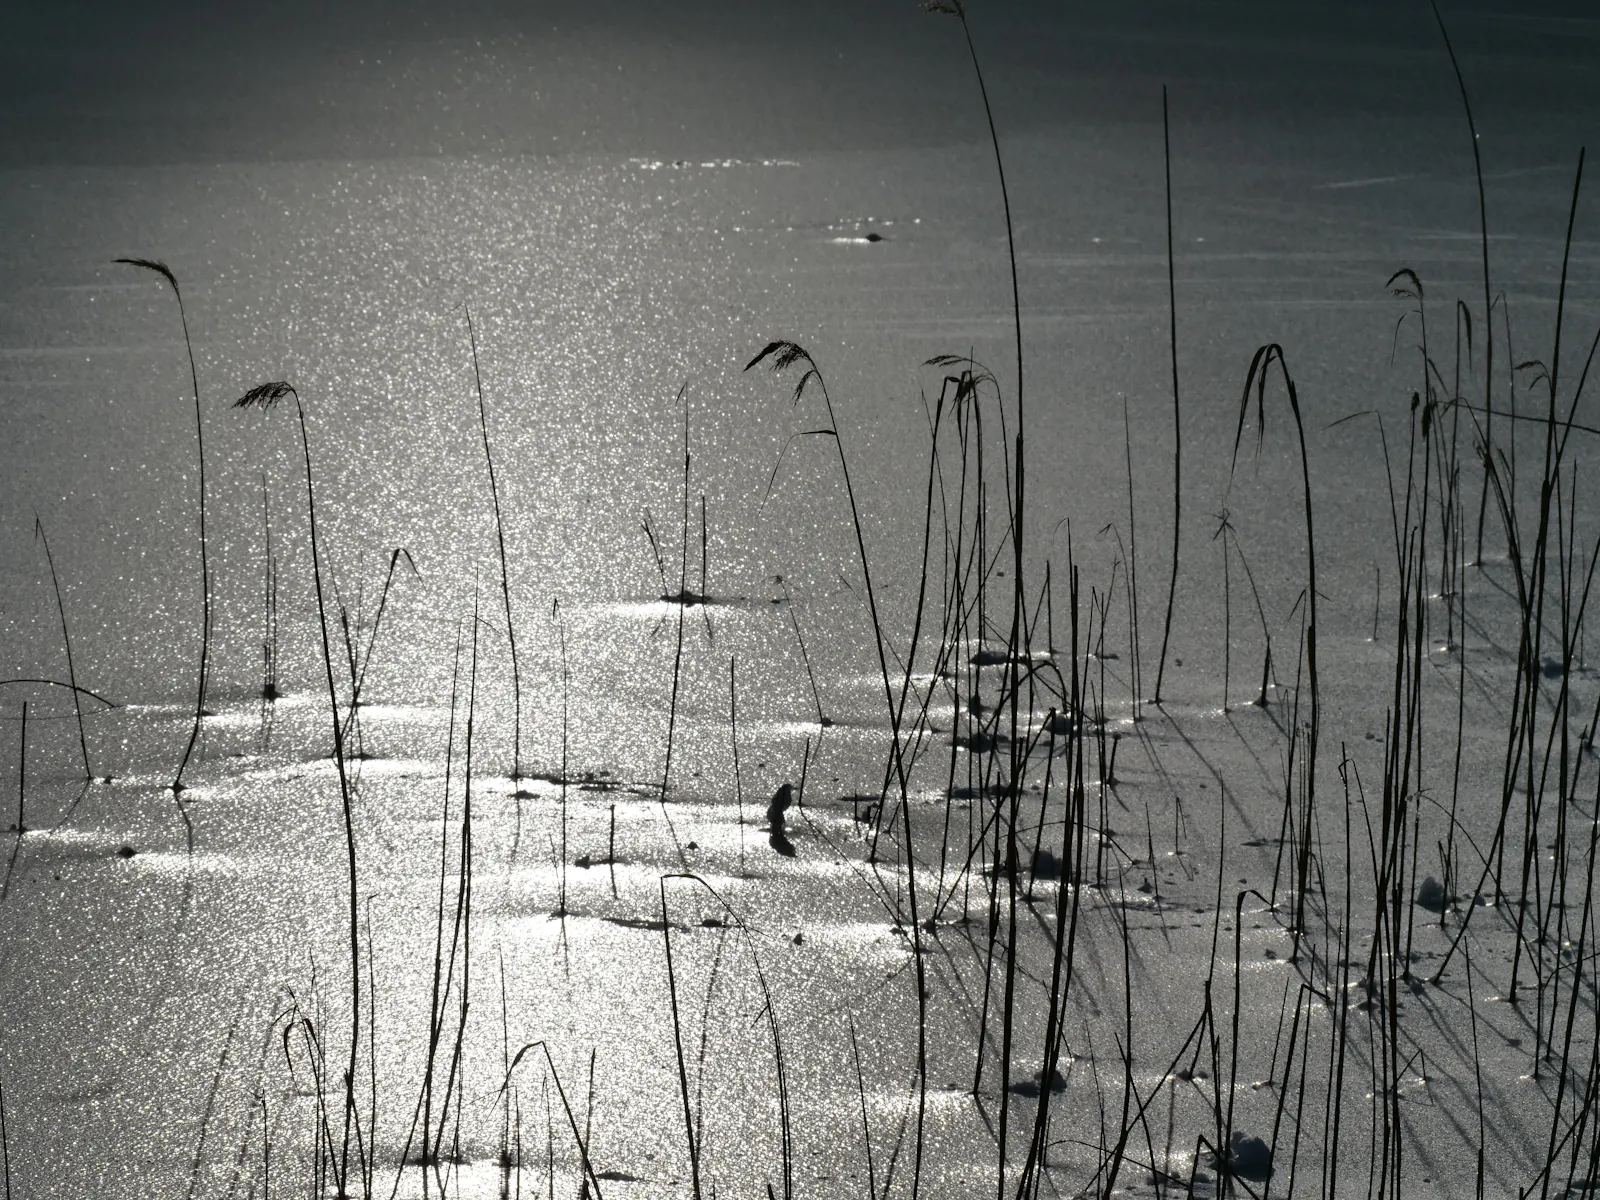 Weil in diesen Tagen so manche Wasserfläche zugefroren ist: Die Sonne zeichnet kunstvolle Motive auf das Eis. Foto: Jürgen Brand